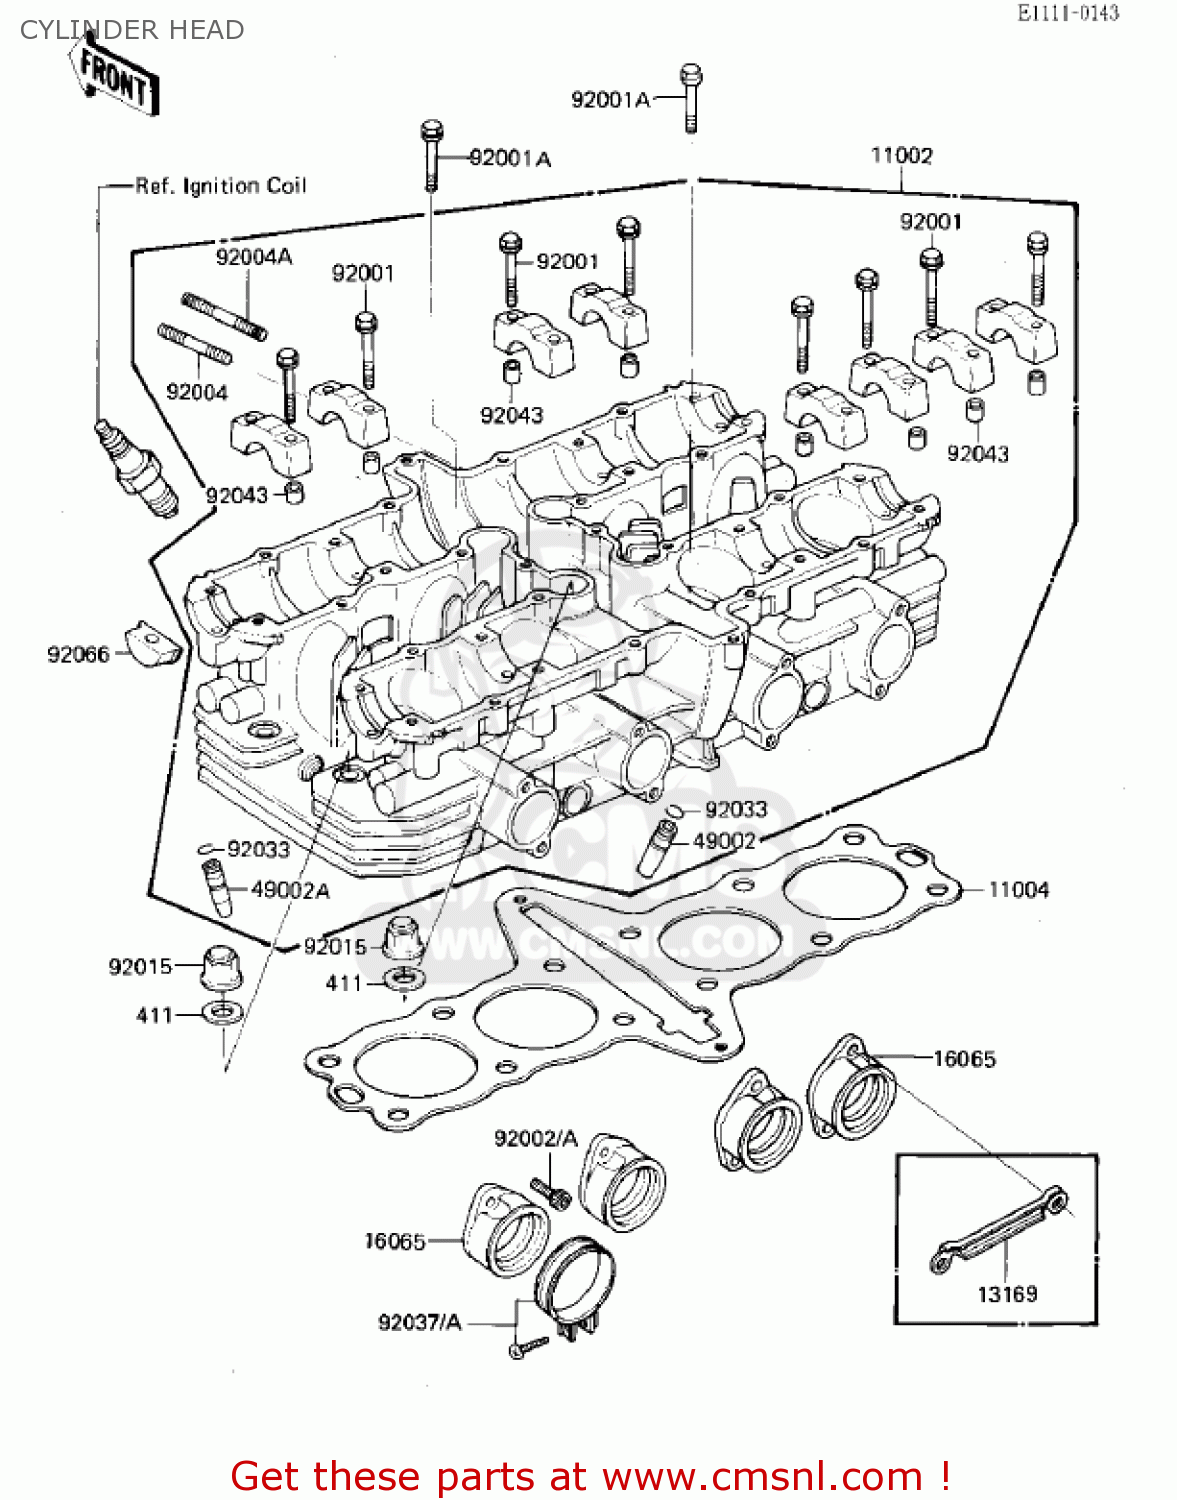 1994 zx7 wiring diagram